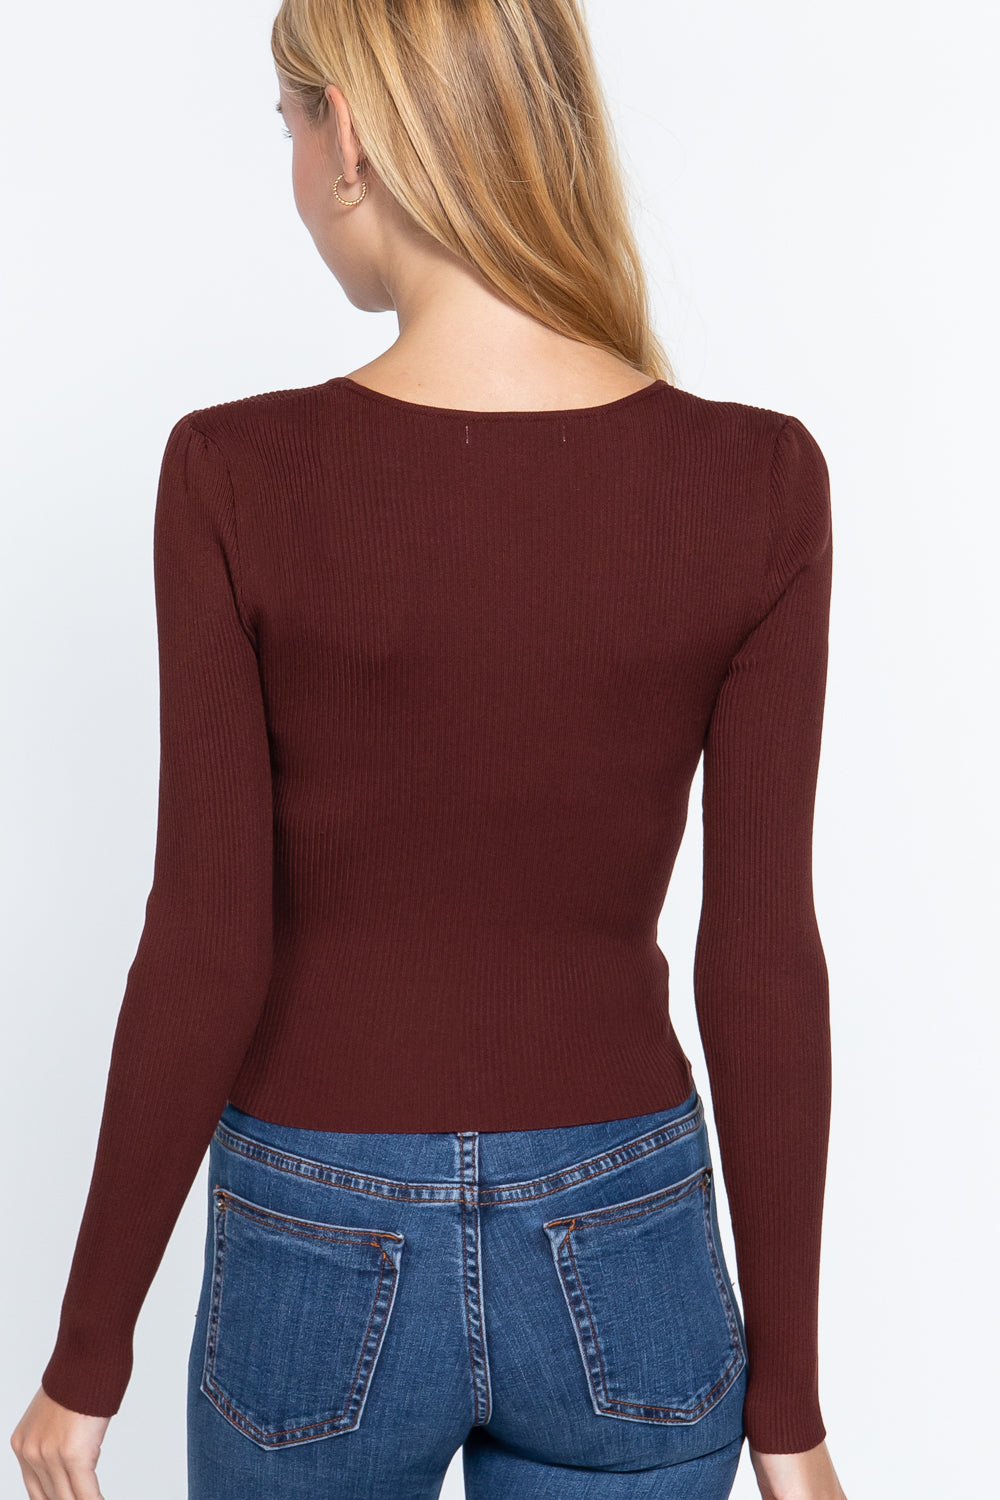 Shirring Sweetheart Neck Sweater - Tigbul's Fashion